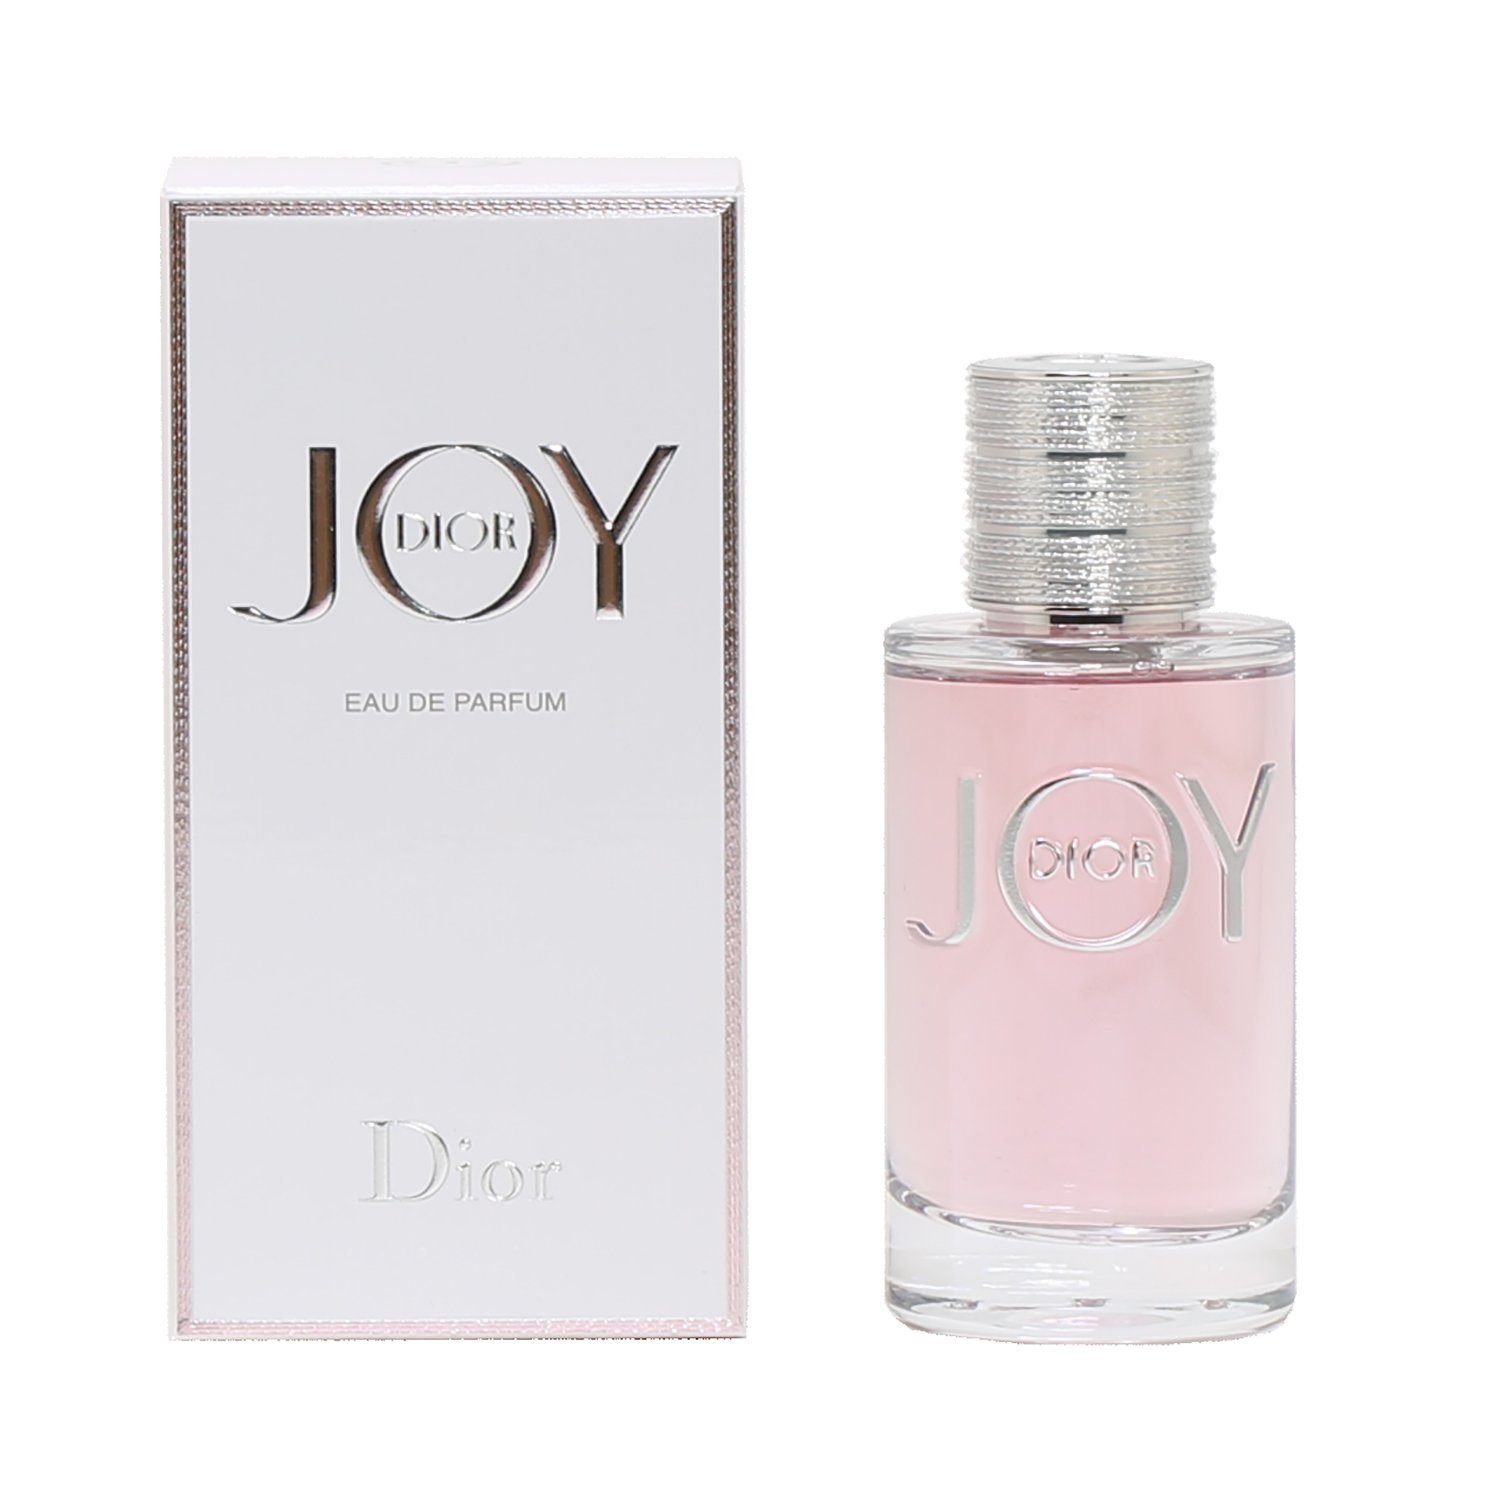 Amazoncom  Christian Dior Miss Dior Eau De Parfum Spray for Women 34  ounce  Beauty  Personal Care